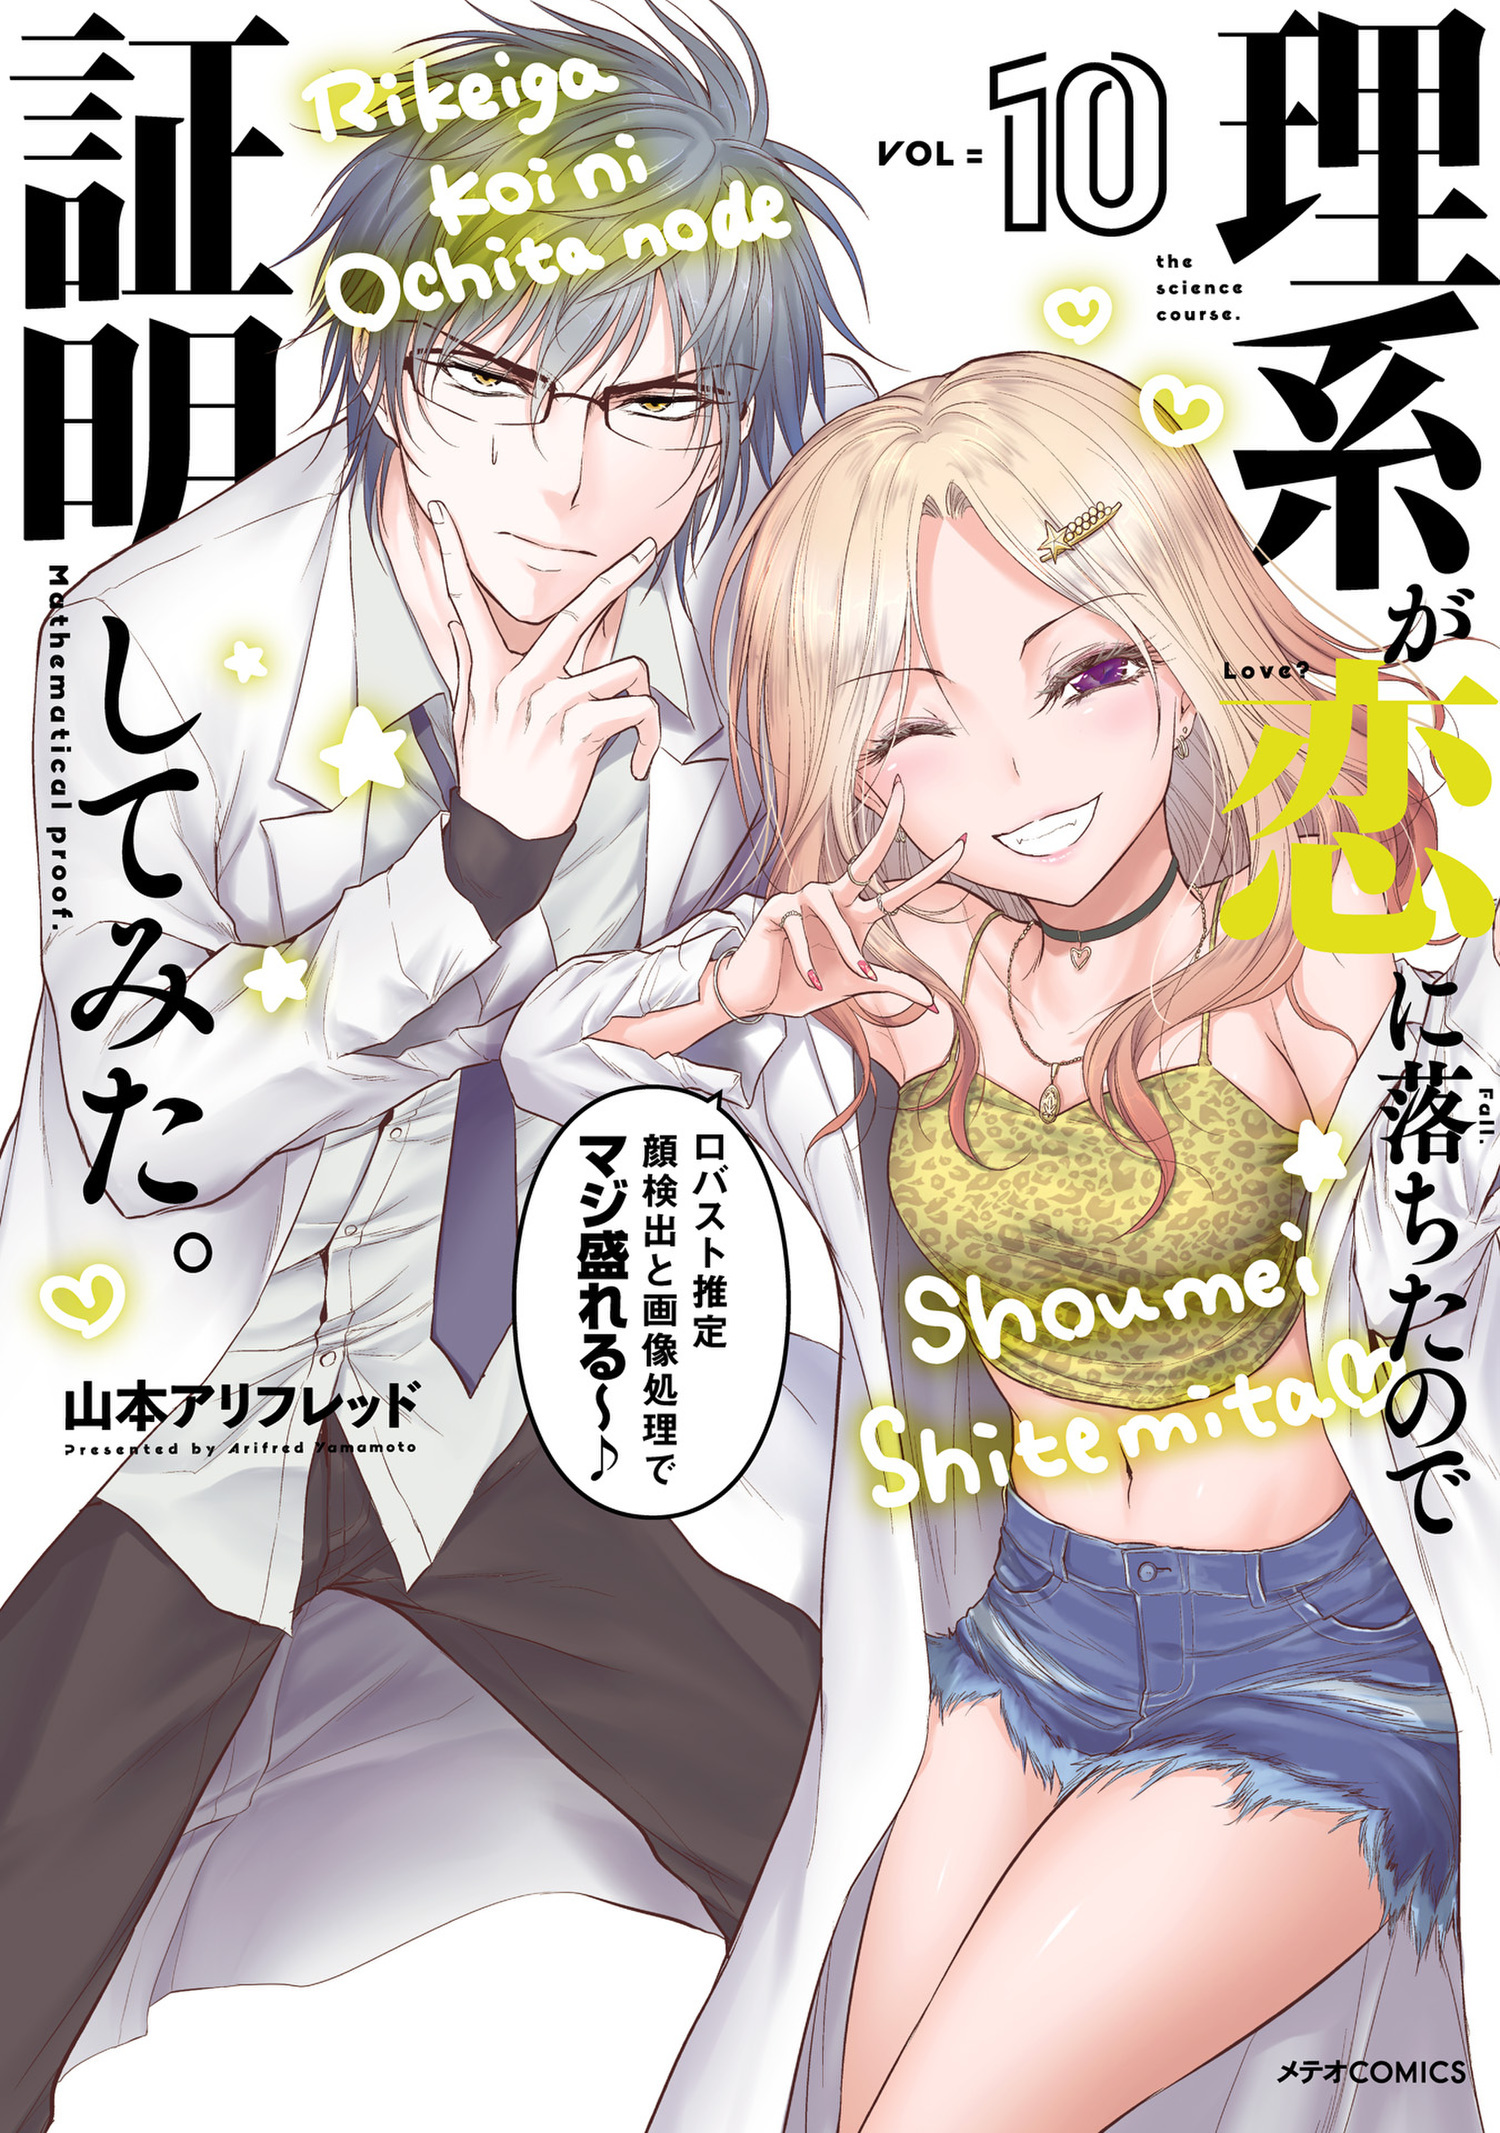 Rikei ga Koi ni Ochita no de Shoumei shitemita Manga - Read Manga Online  Free